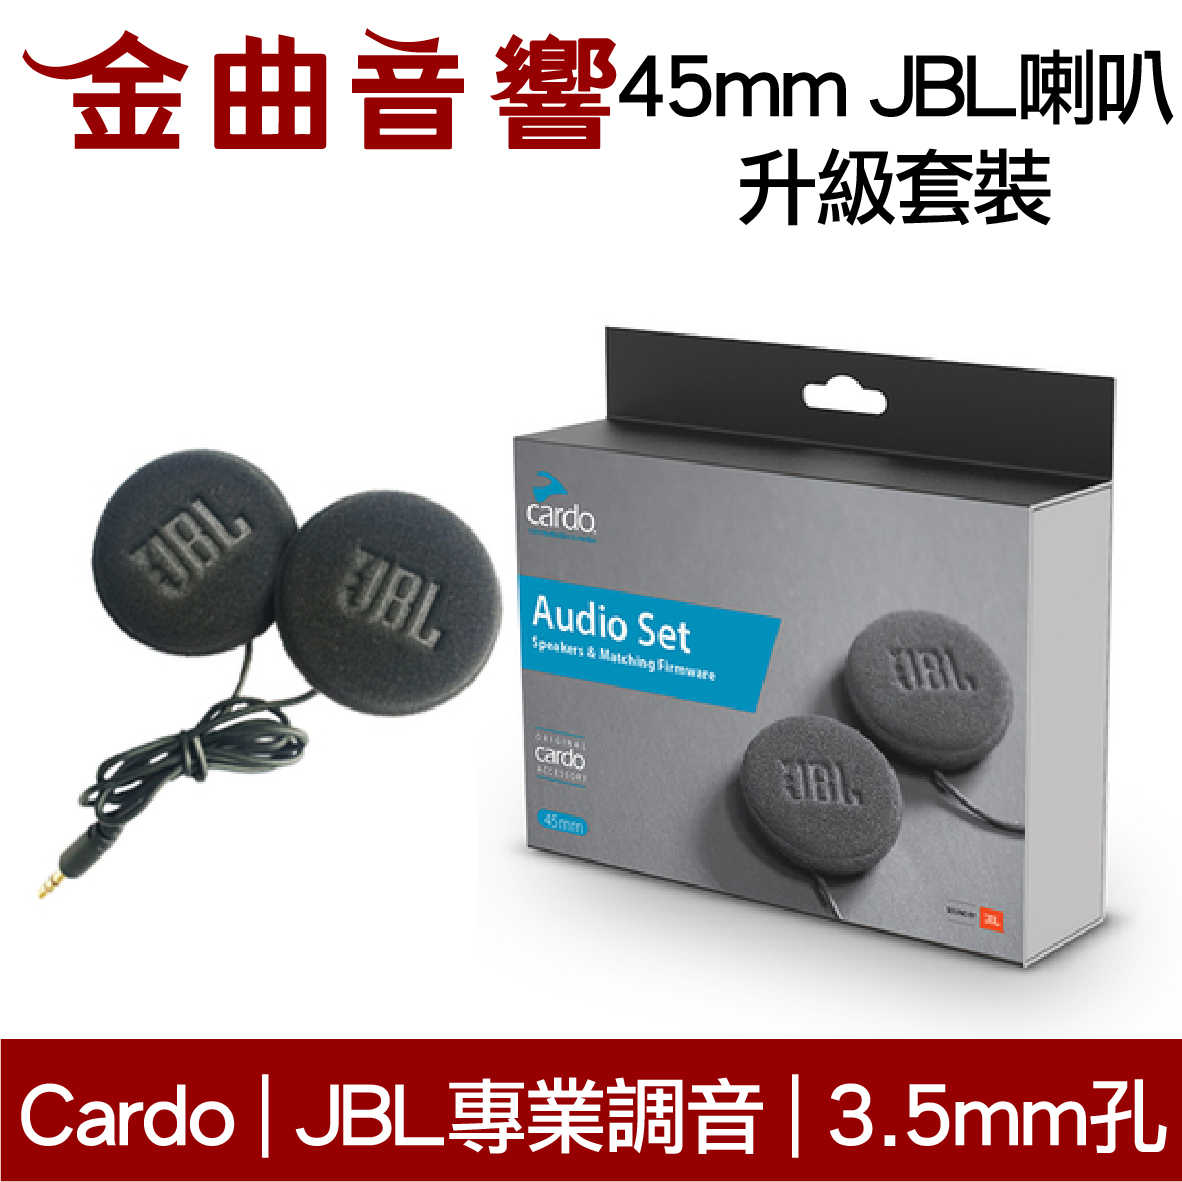 Cardo 45mm JBL喇叭 升級 套裝 相容Cardo全系列 | 金曲音響